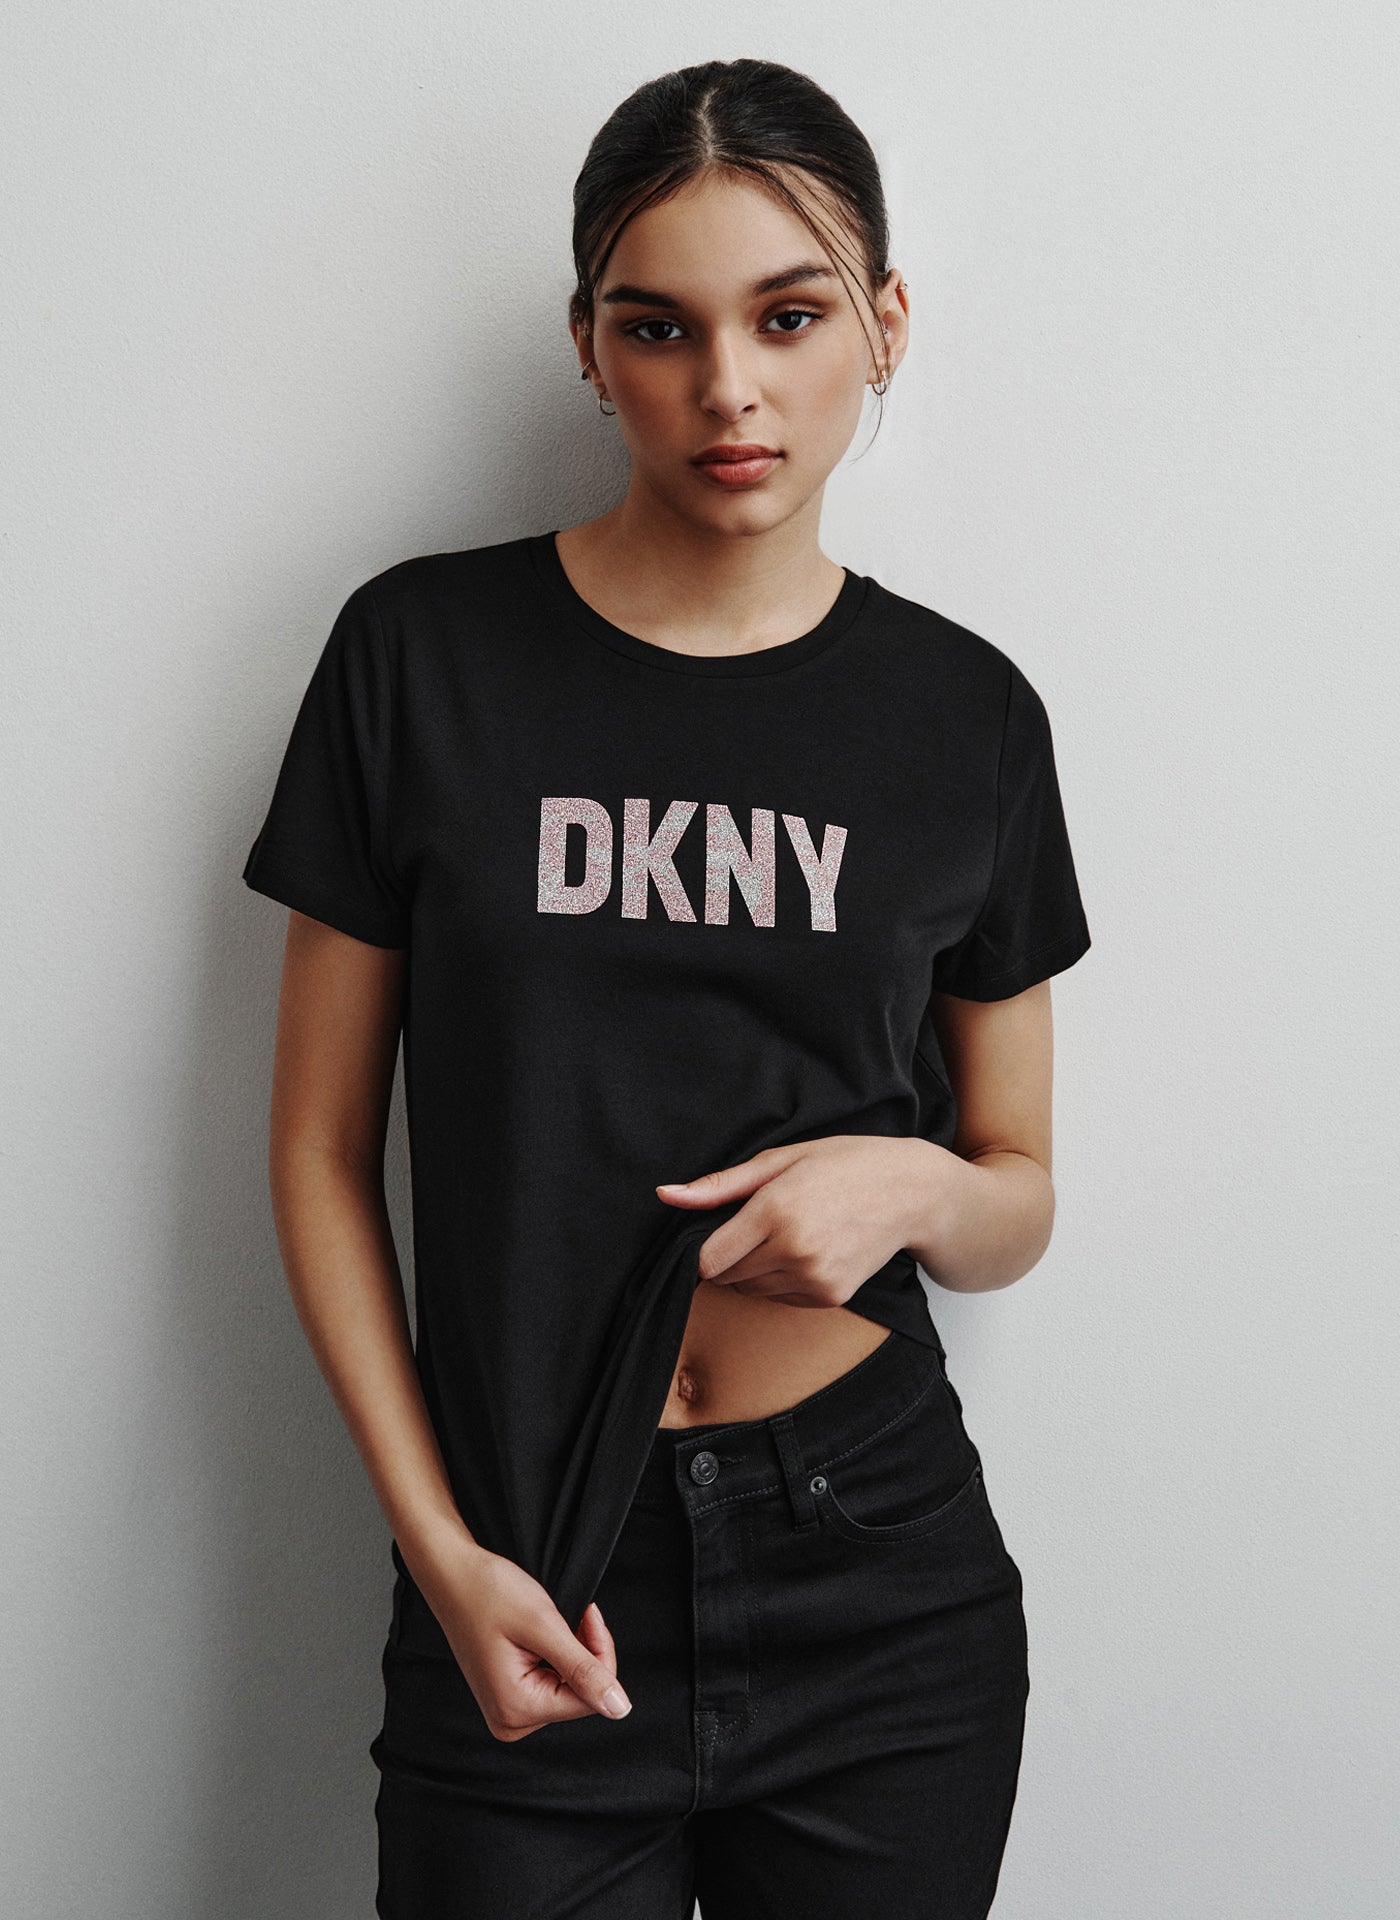 DKNY Rhinestone Logo-print Crewneck Sweatshirt in Black | Lyst